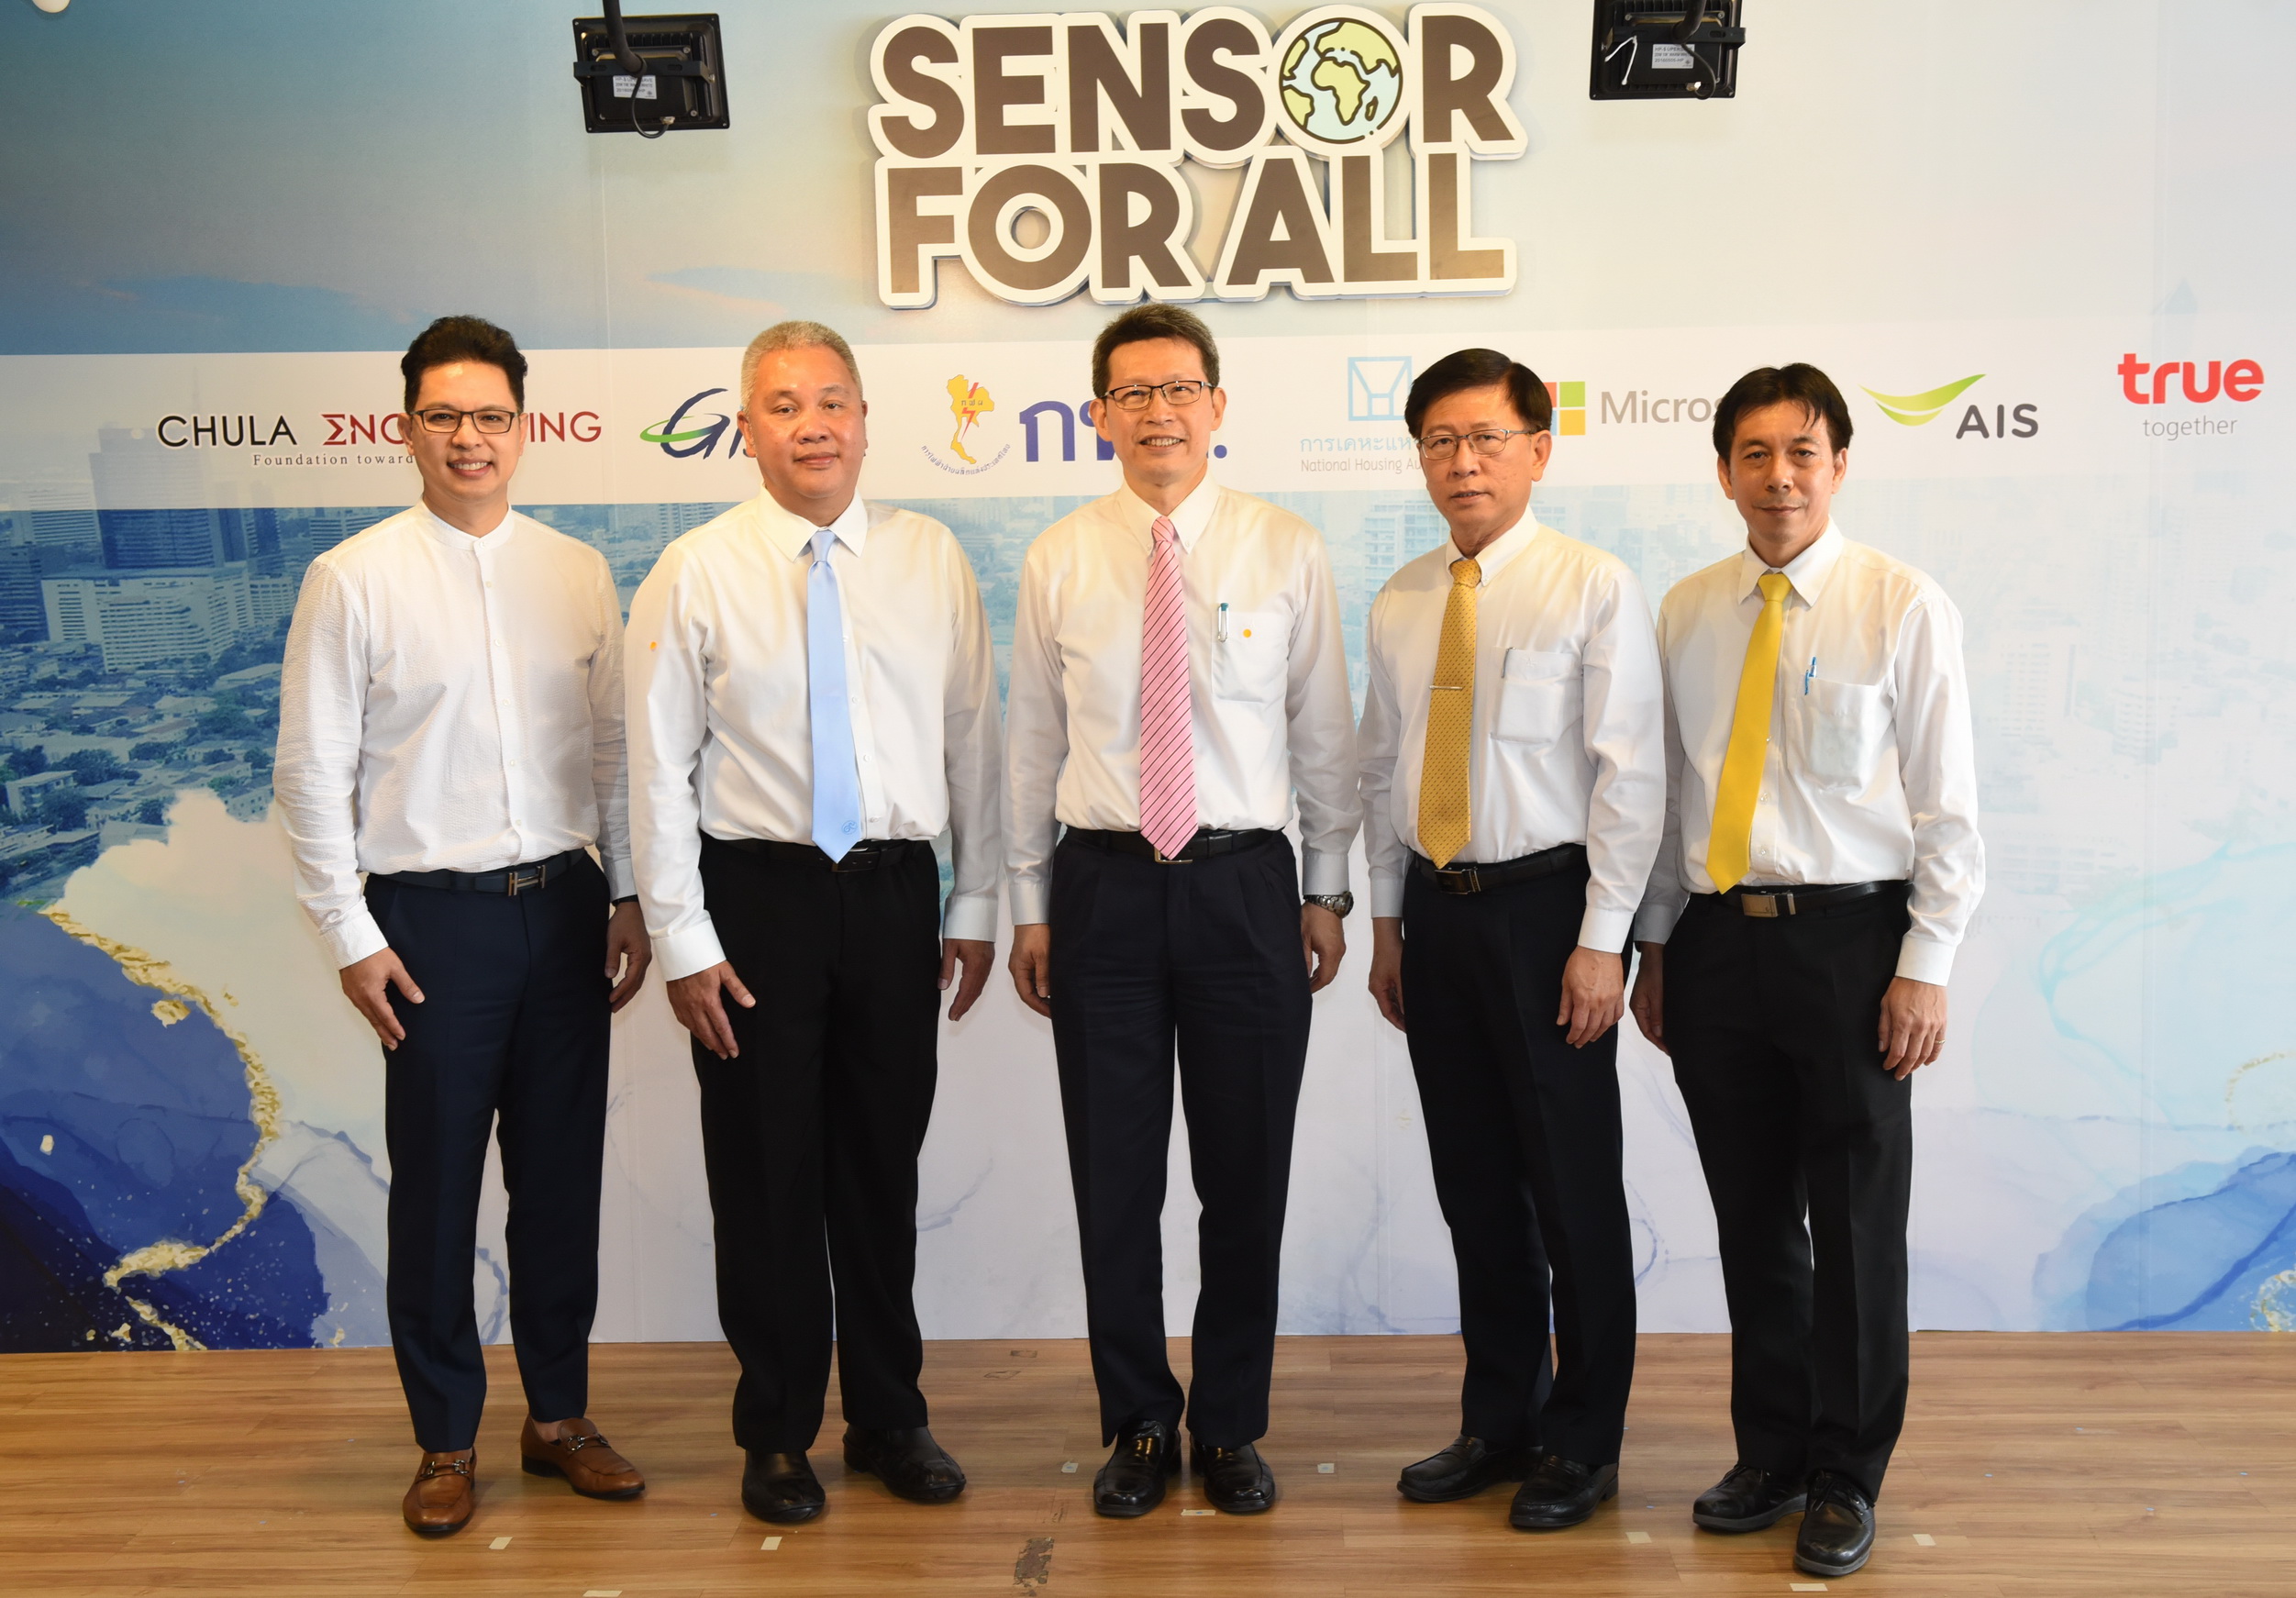 วิศวฯ จุฬาฯ ร่วมกับภาครัฐและองค์กรเอกชนชั้นนำของไทย ผนึกพลังสู้ PM 2.5 พัฒนา Sensor for All ระบบตรวจวัดสภาพอากาศ